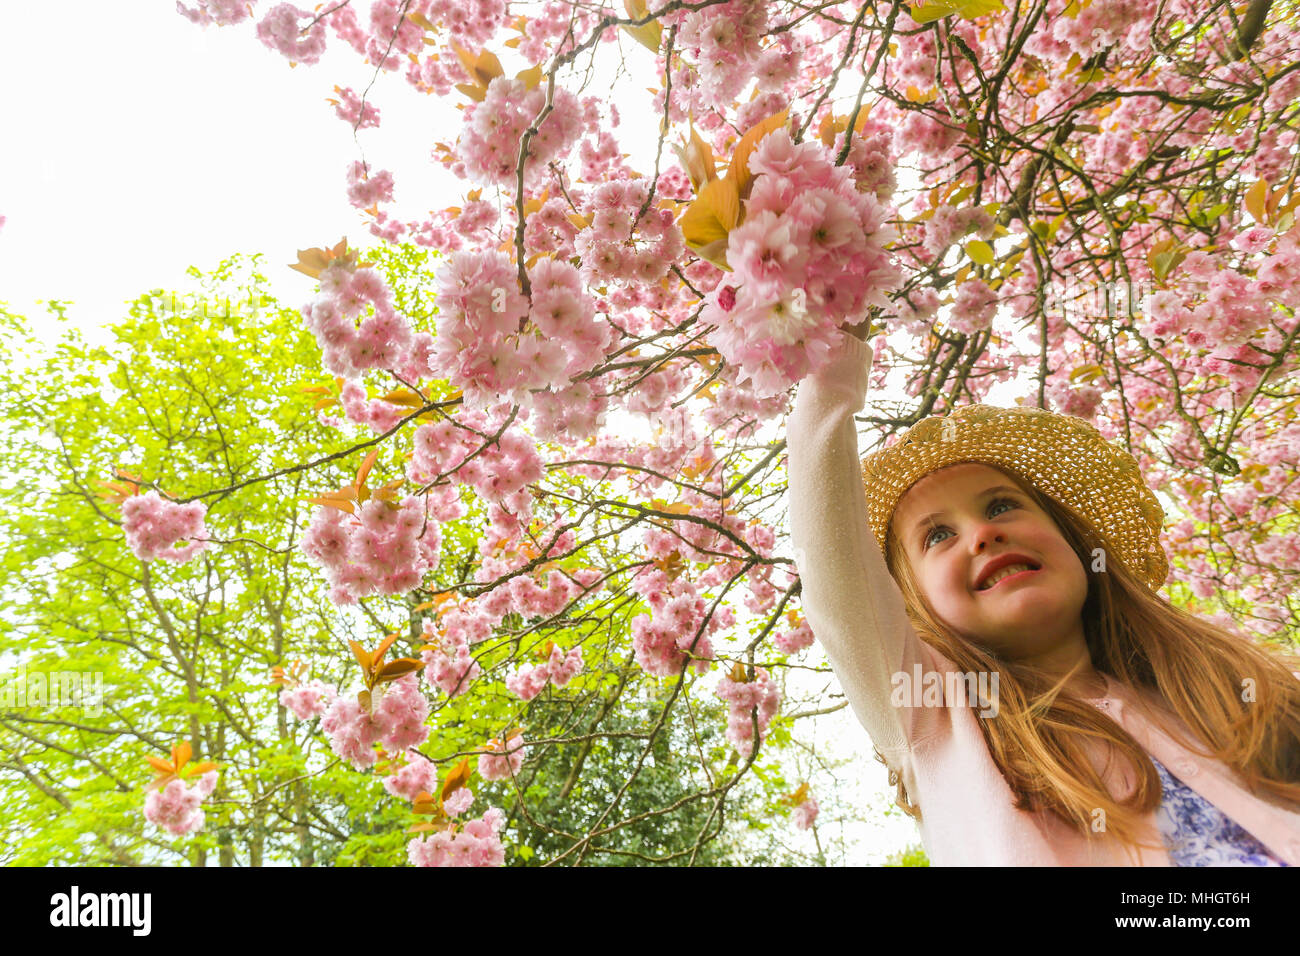 Quattro-anno-vecchia ragazza nel parco in primavera con un fiore fiori ad albero Foto Stock